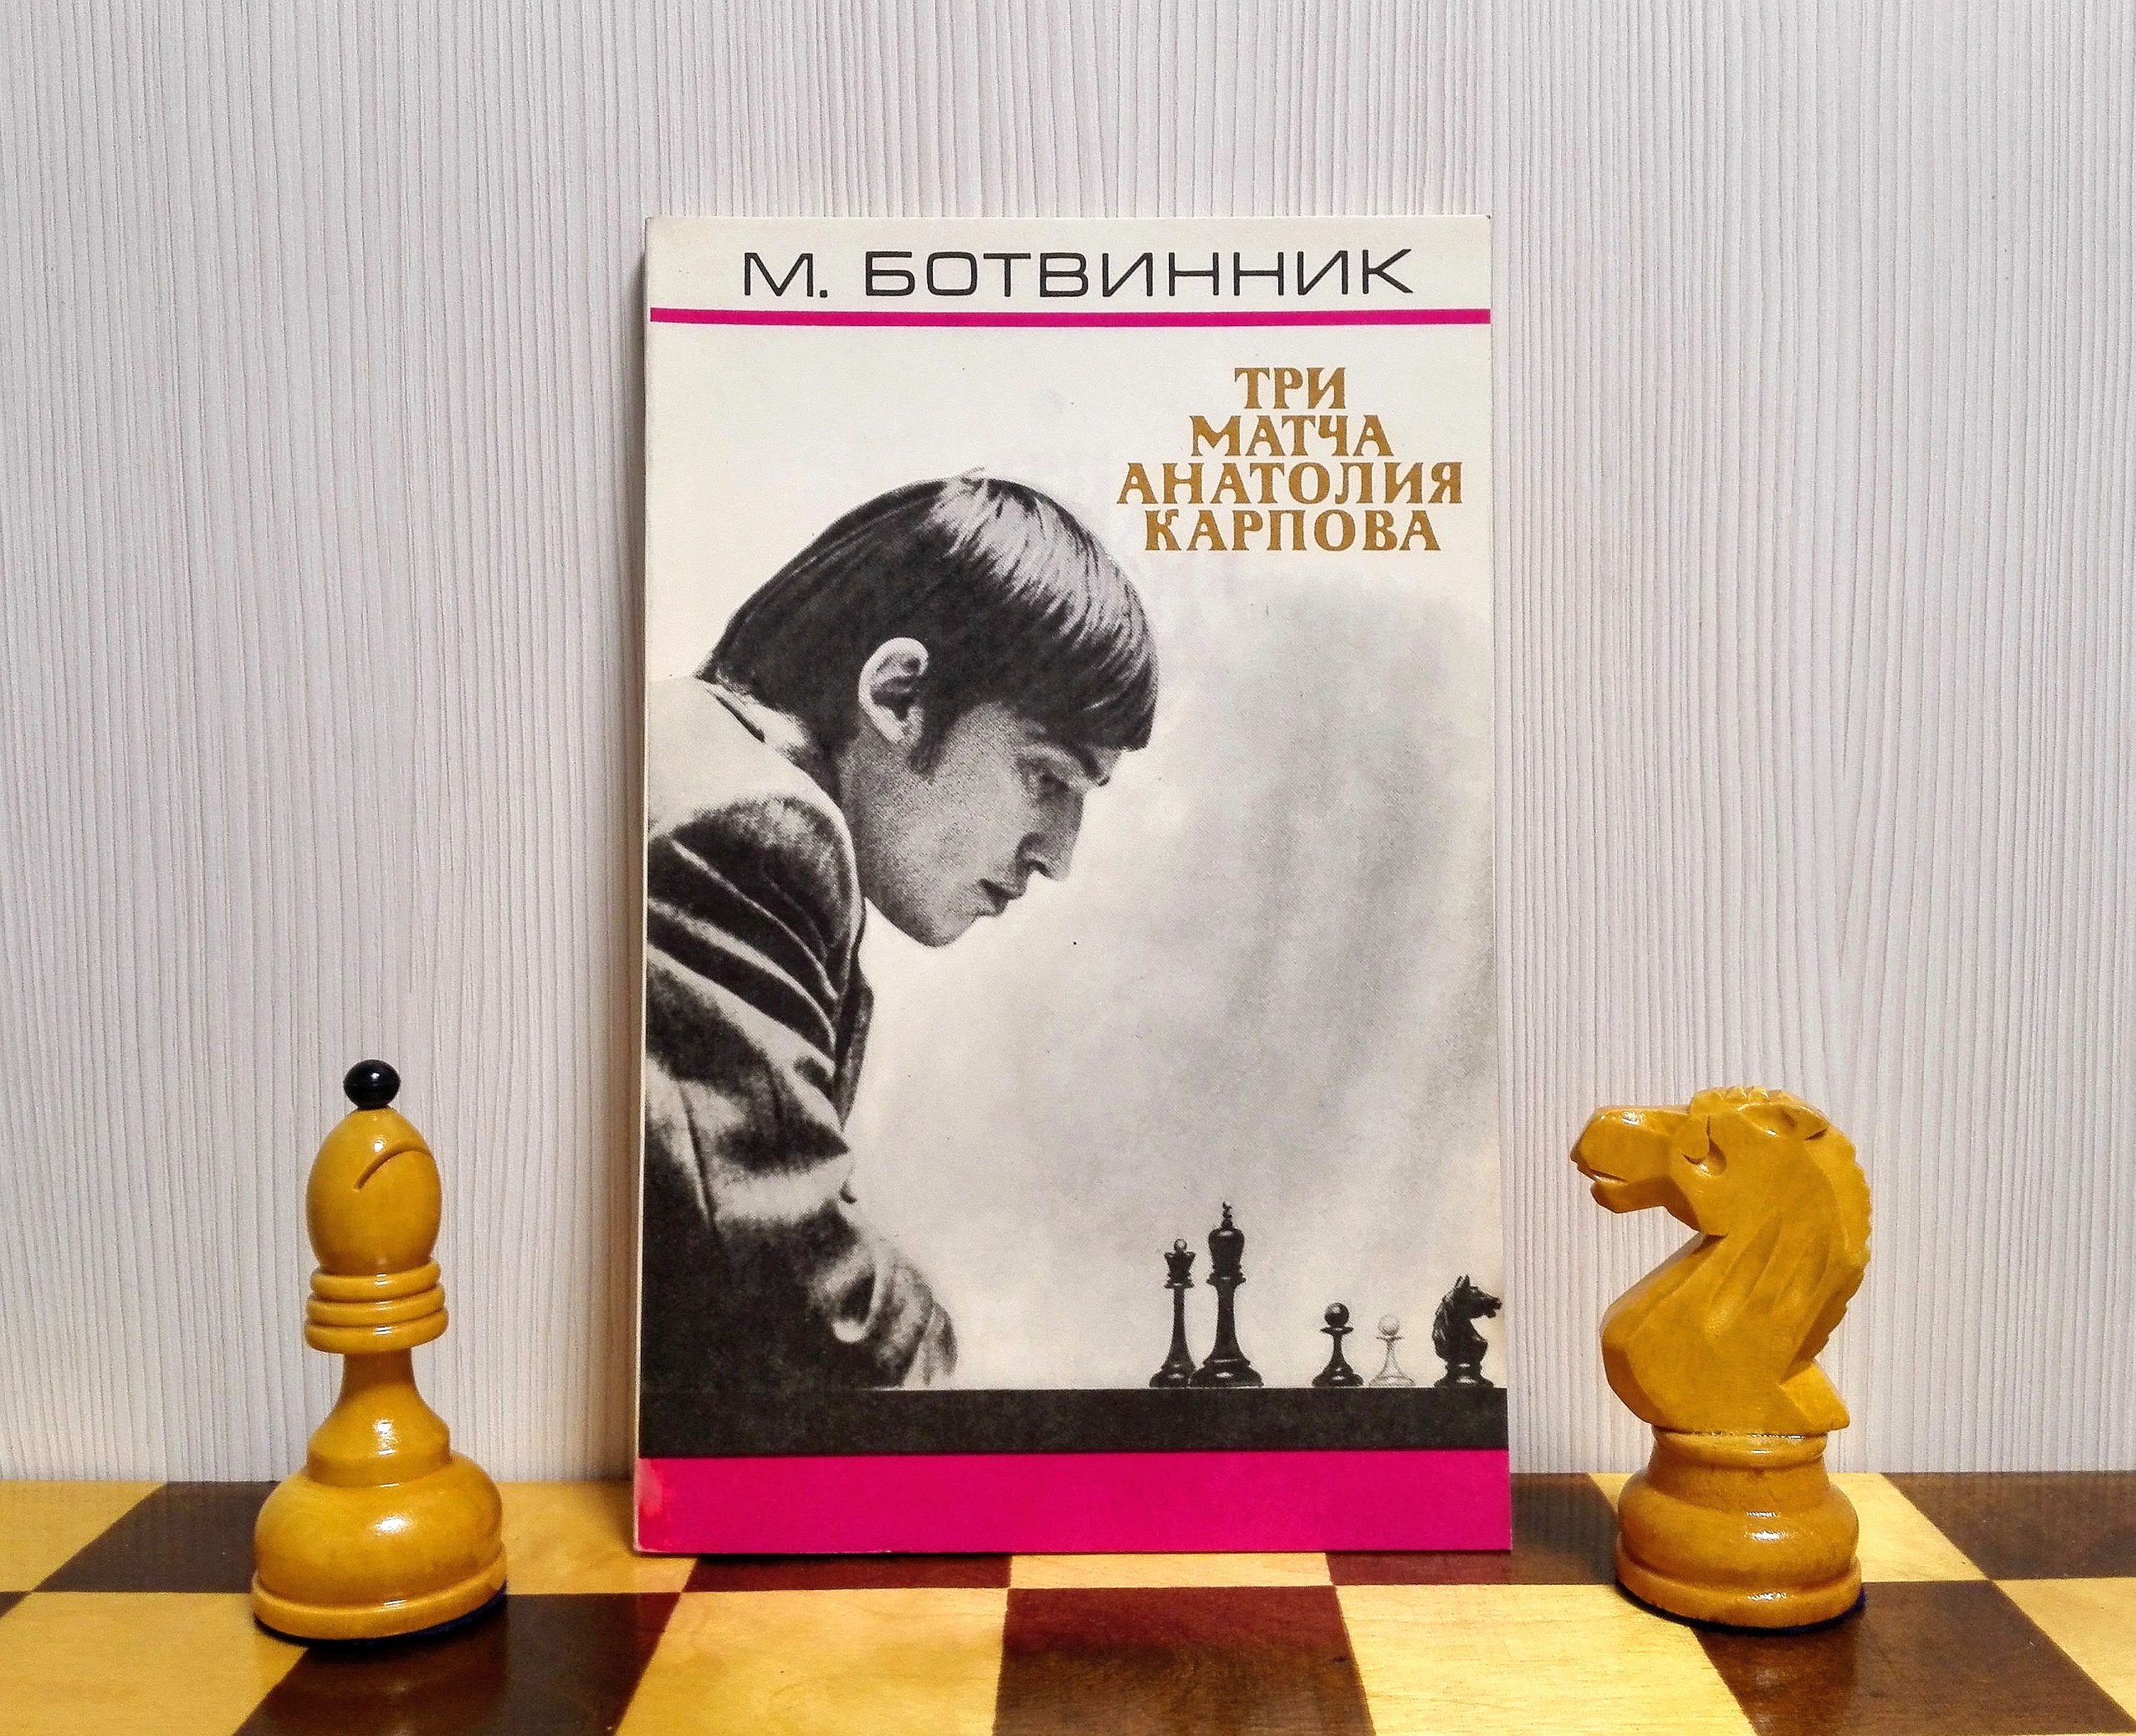 Schach mit Karpov“ – Bücher gebraucht, antiquarisch & neu kaufen